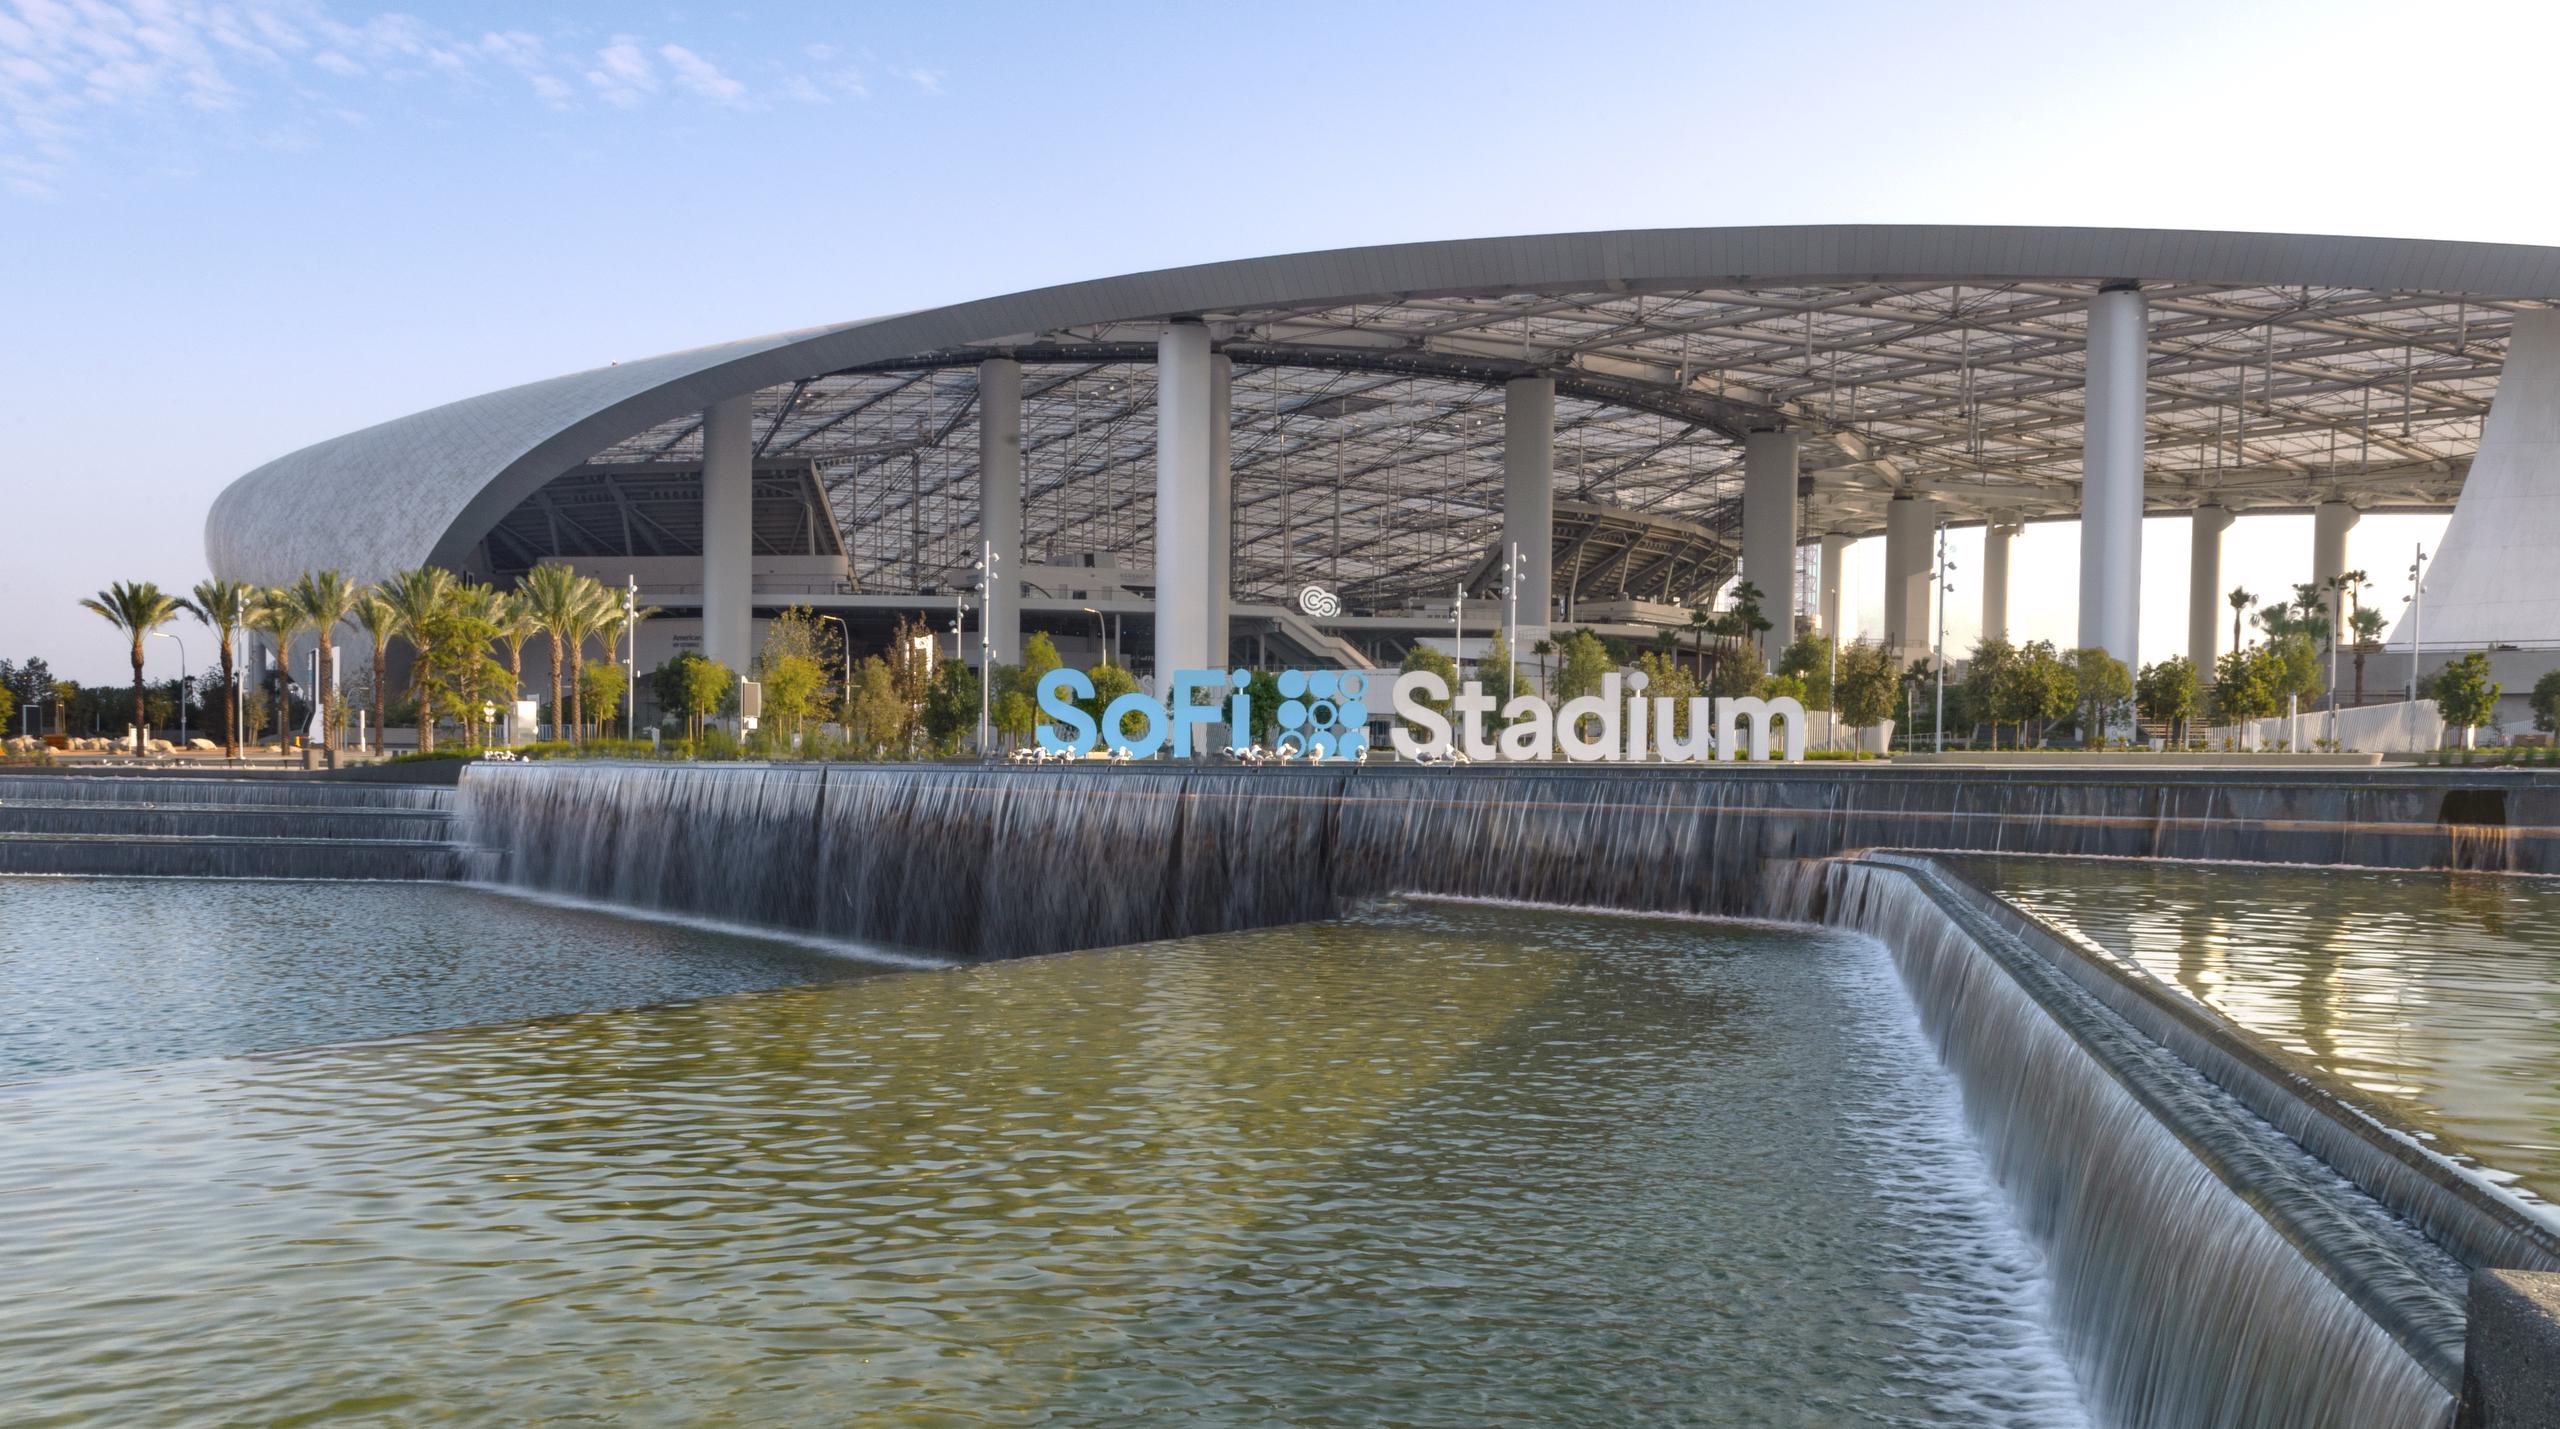 Sofi Stadium - Architectural Railings